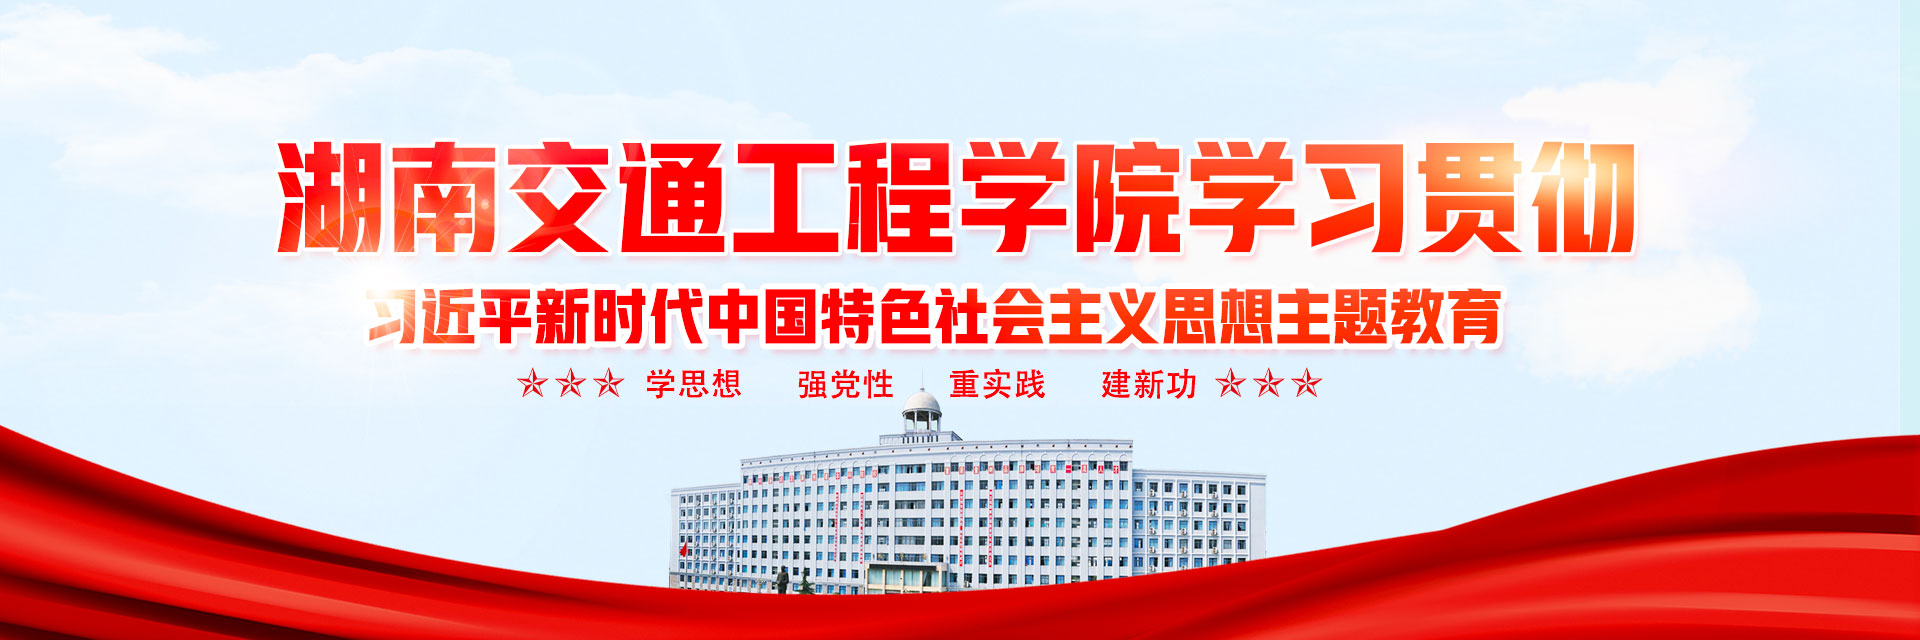 湖南交通工程学院学习贯彻习近平新时代中国特色社会主义思想主题教育